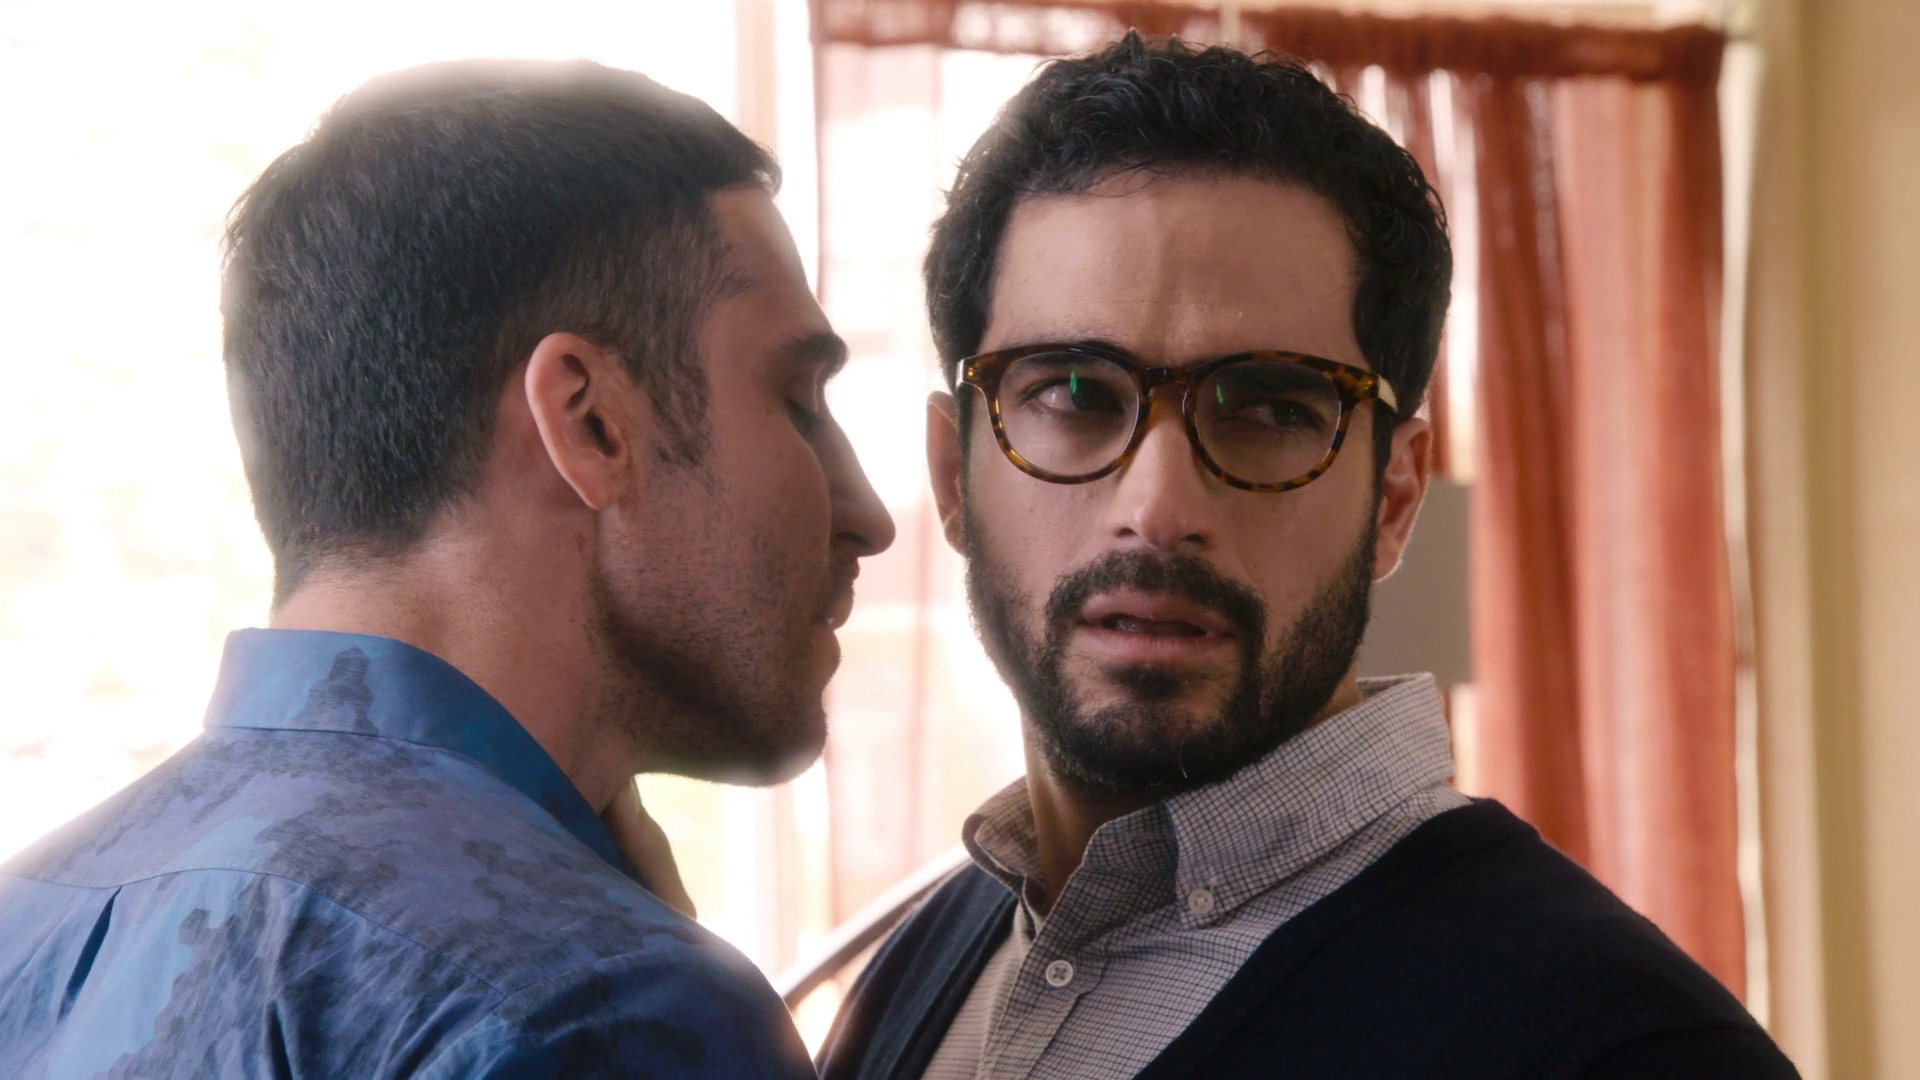 Hernando, personagem de Alfonso Herrera na série Sense8, arrasa com seus óculos de grau